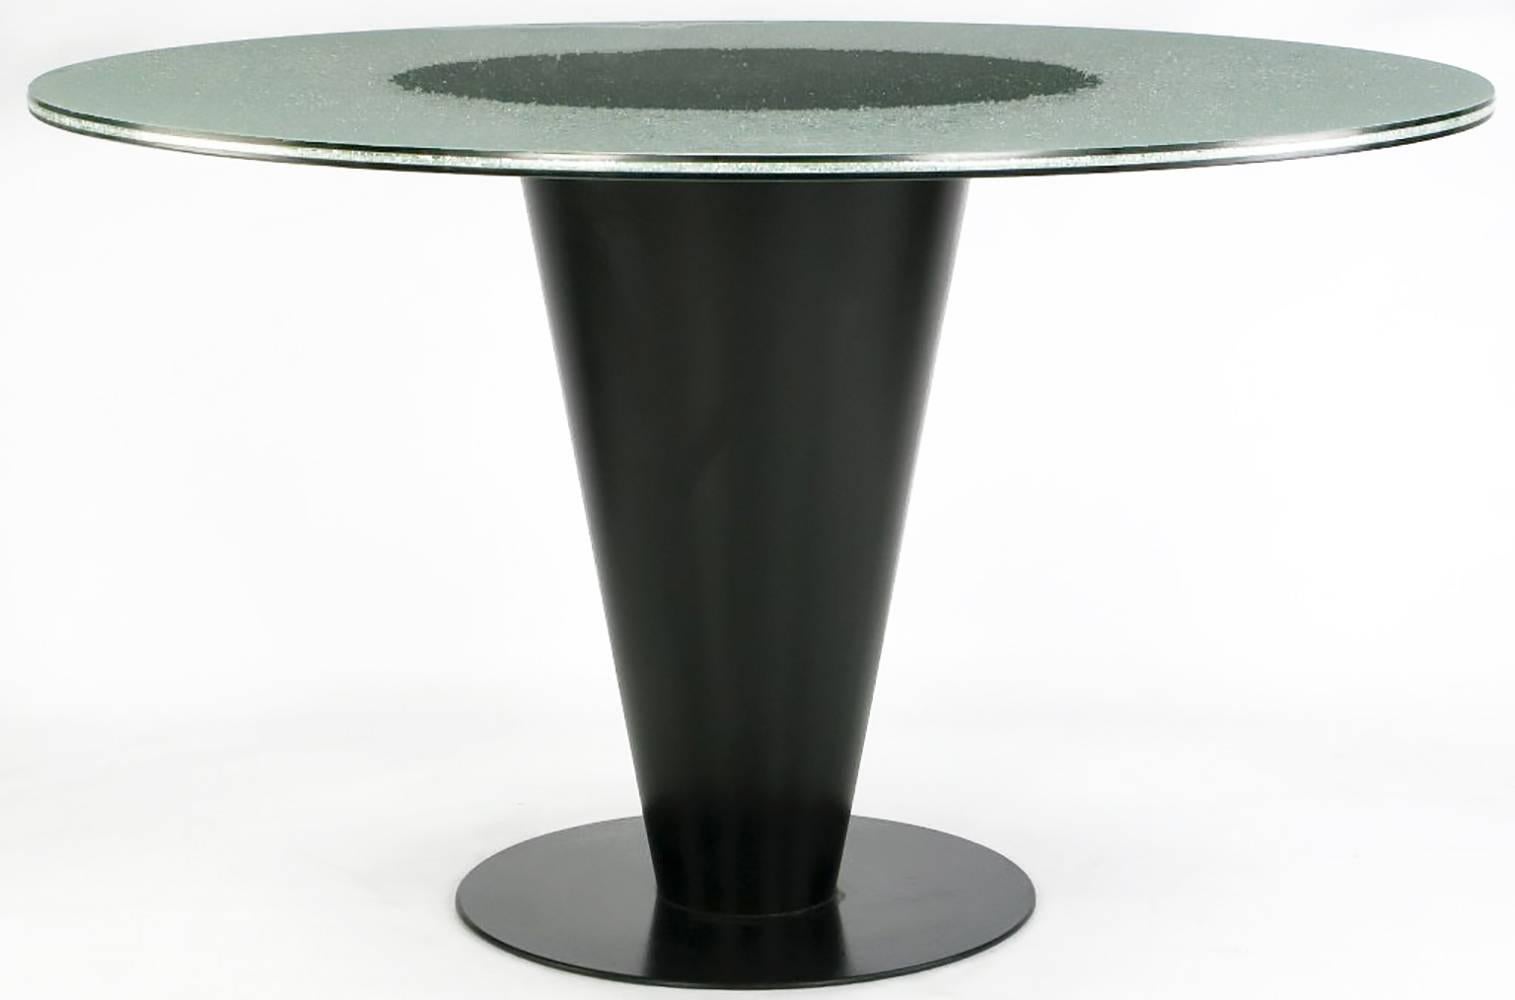 Table de salle à manger conique conçue par Joe D'urso et fabriquée par Bieffeplast, avec plateau en verre craquelé en trois parties. La base de la table en acier émaillé noir en forme de cône supporte un plateau en verre unique. Le plateau rond de